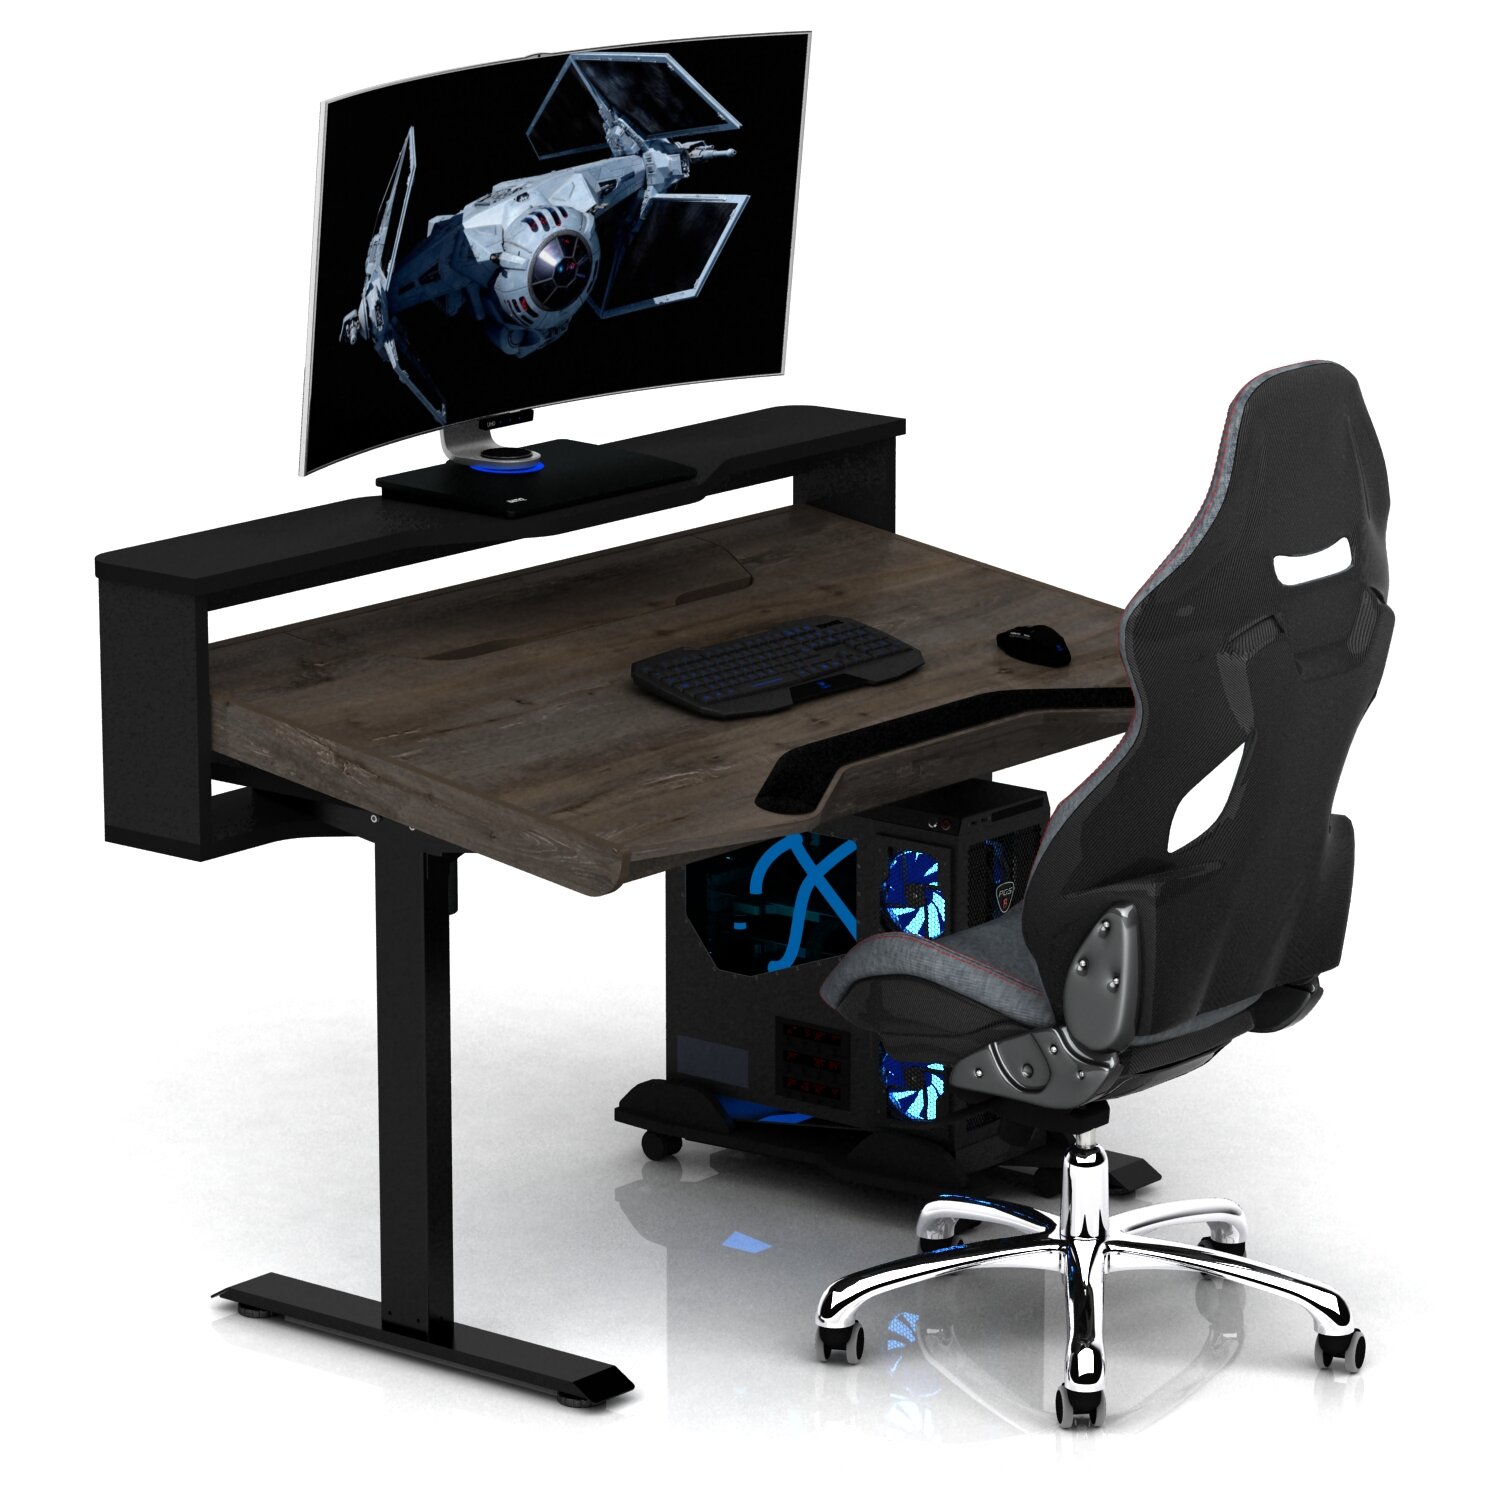 Геймерские игровые столы и кресла Регулируемый по высоте и углу наклона столешницы компьютерный геймерский стол с электроприводом DX ELECTRIC PHANTOM Амберг